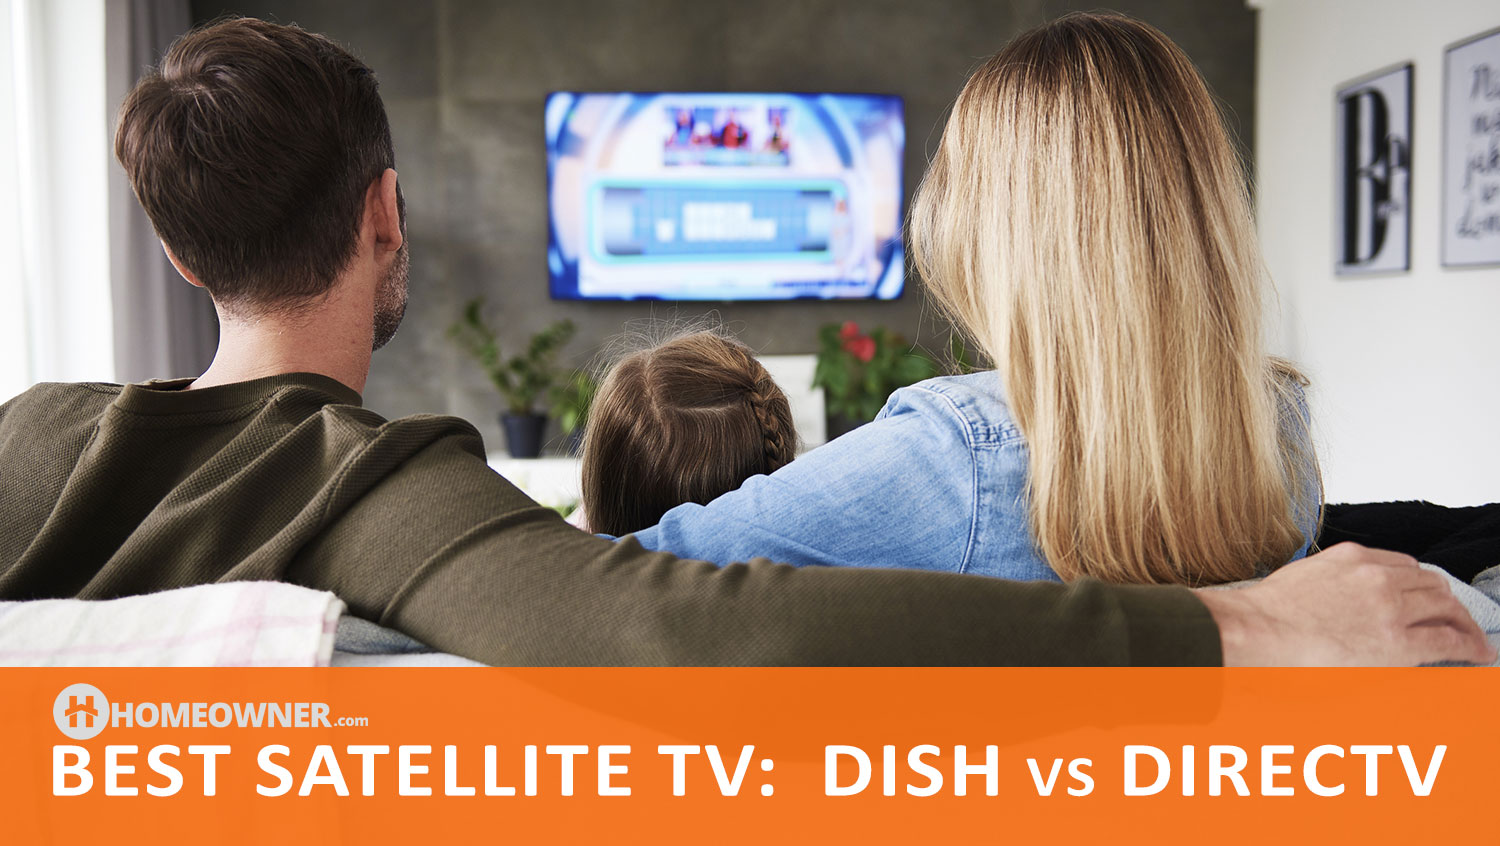 Best Satellite TV in 2022: DISH vs DIRECTV